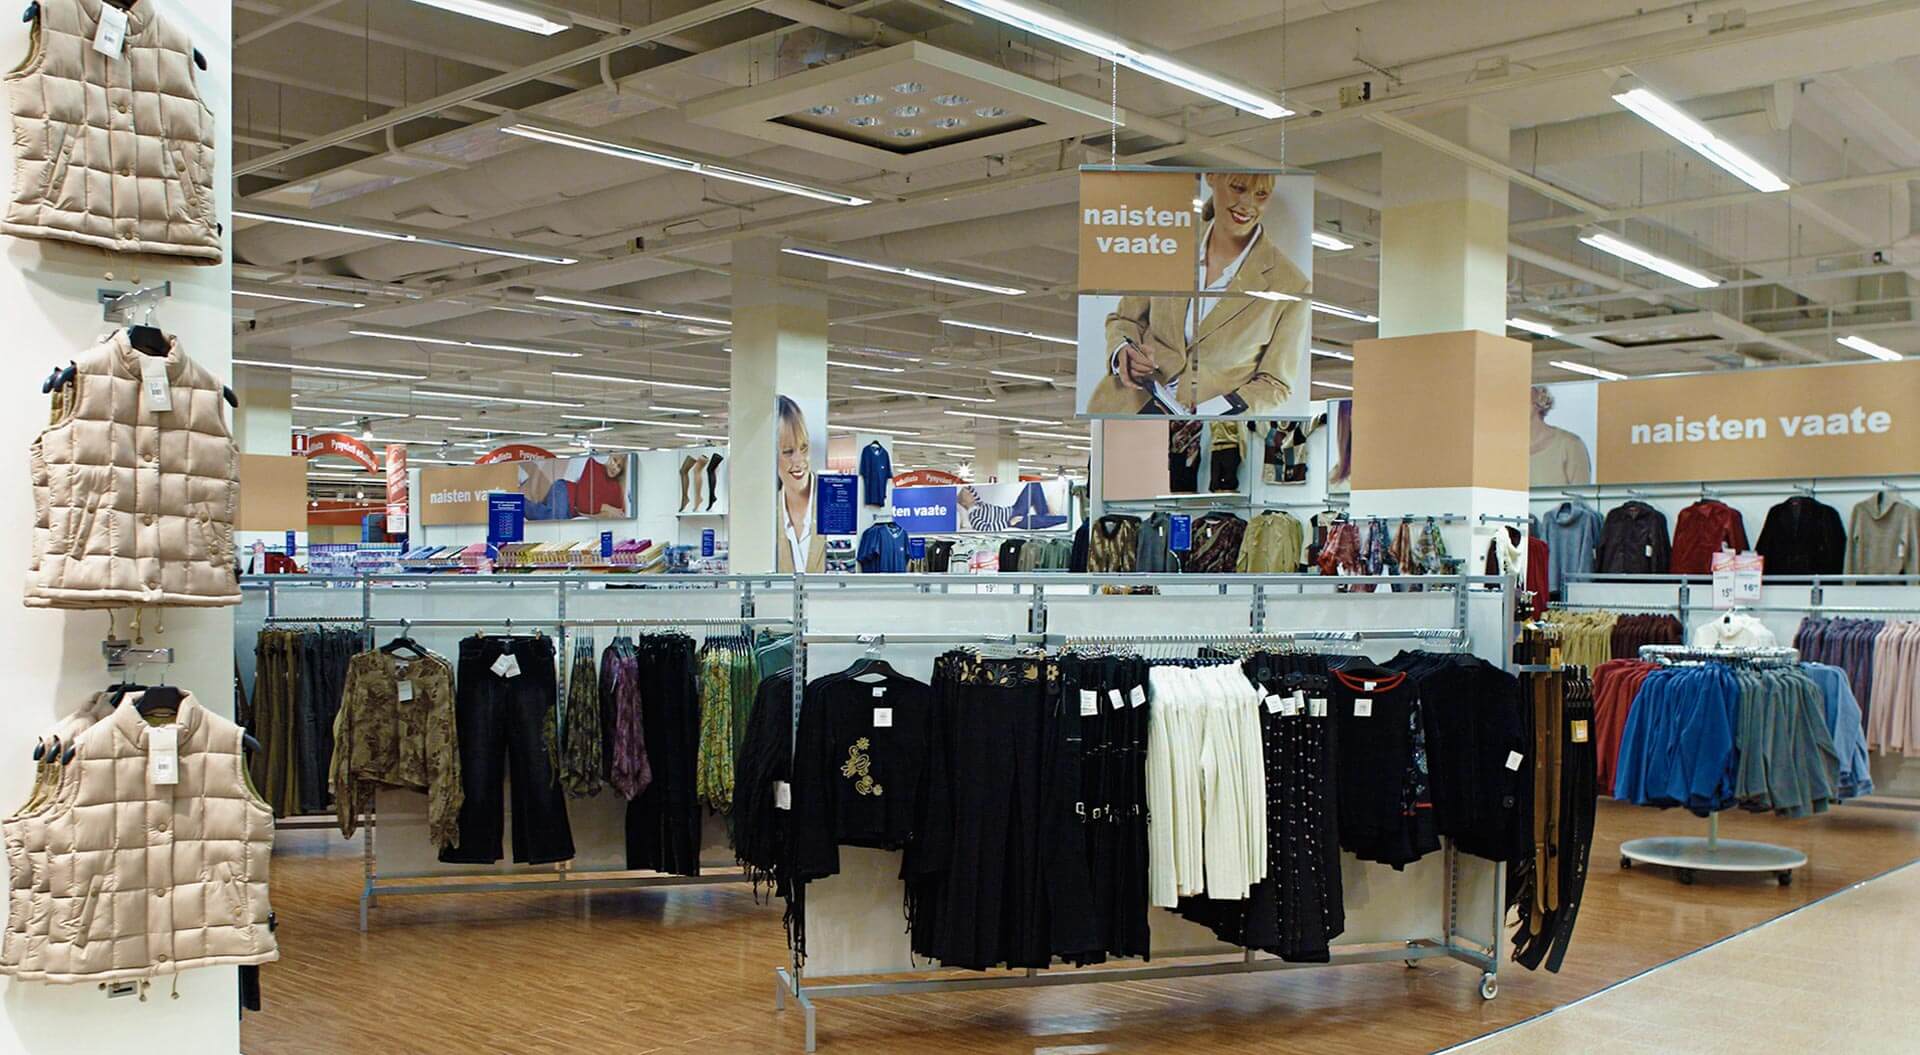 K CityMarket hypermarket Finland, fashion department merchandising system and branding